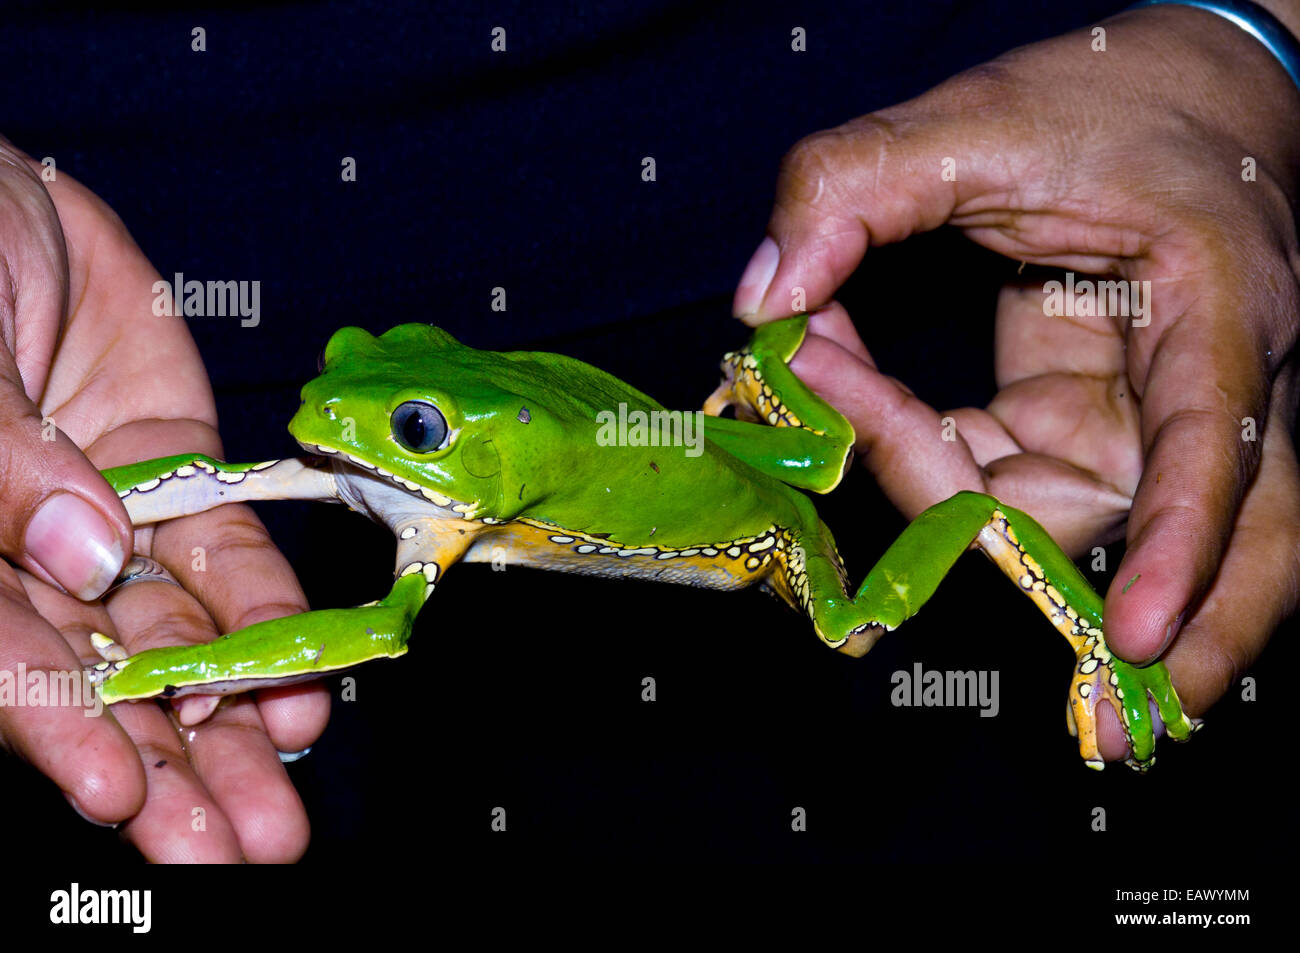 Die langen Gliedmaßen einen leuchtend grünen Riesen Blatt Frosch streckte unterstreicht seine arboreal Lebensstil. Stockfoto